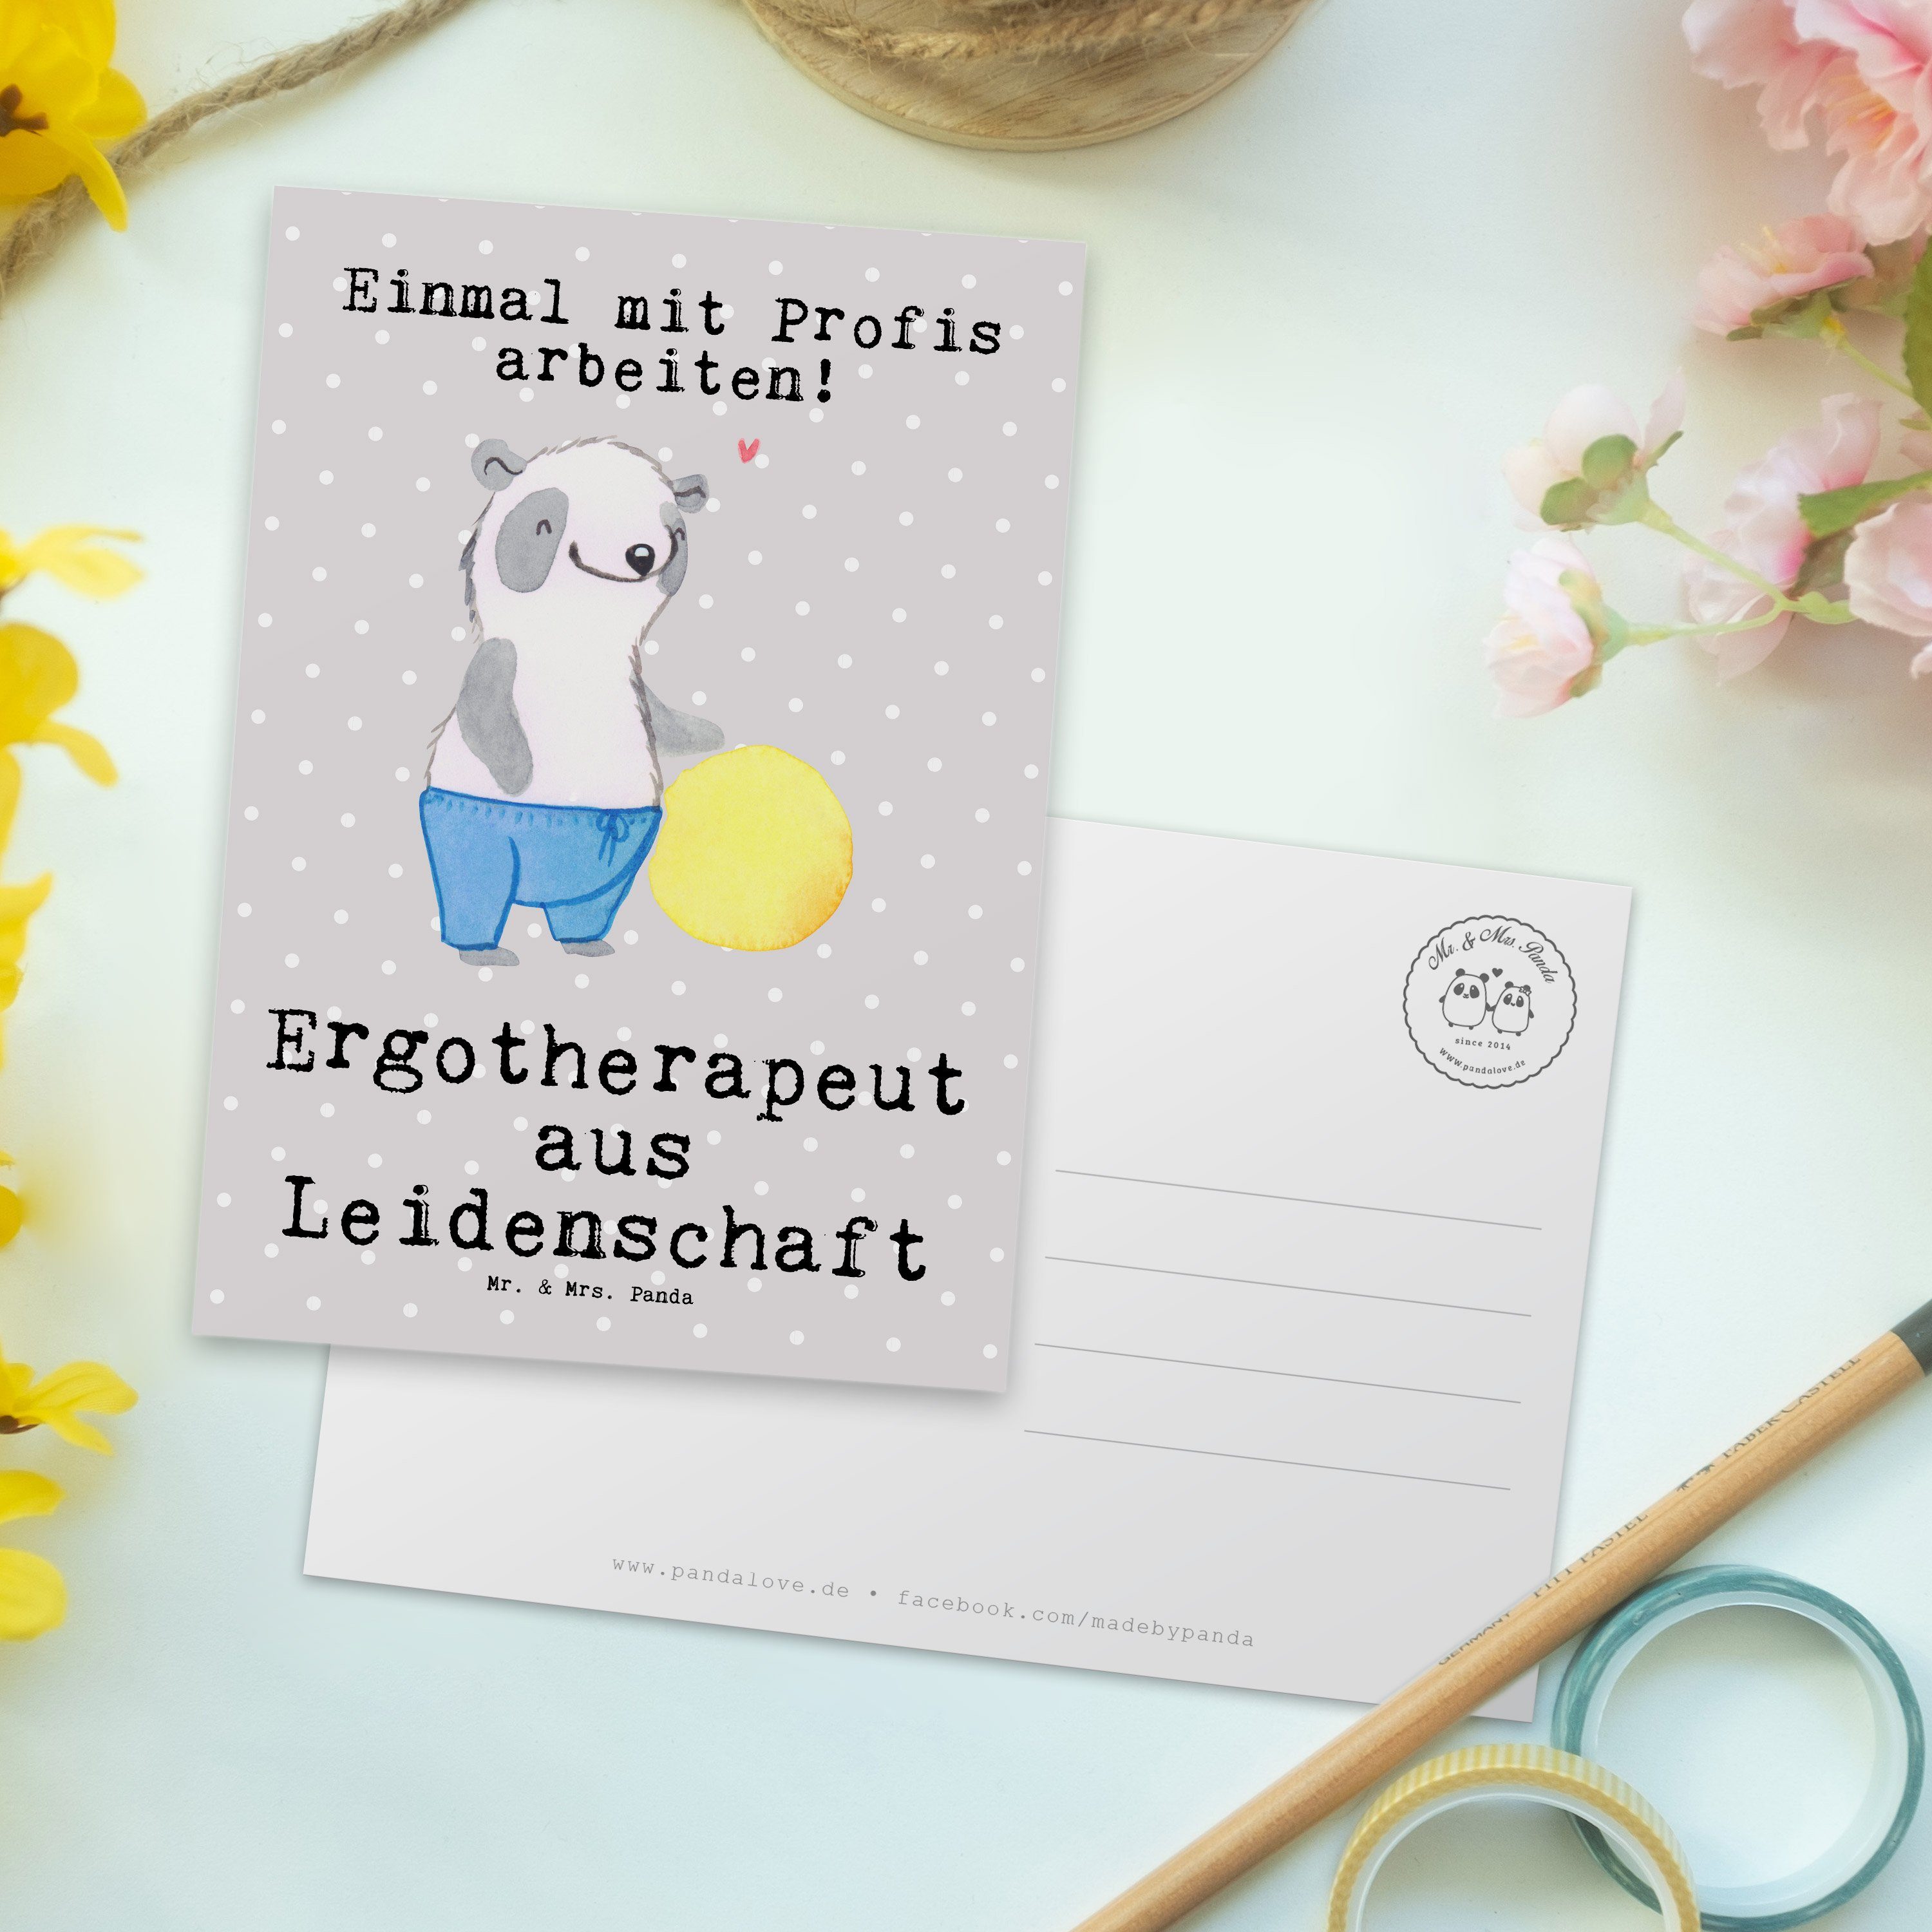 Grau Mr. Panda Ergotherapeut Jubiläum, - Mrs. aus Postkarte Geschenk, Pastell - & Leidenschaft A